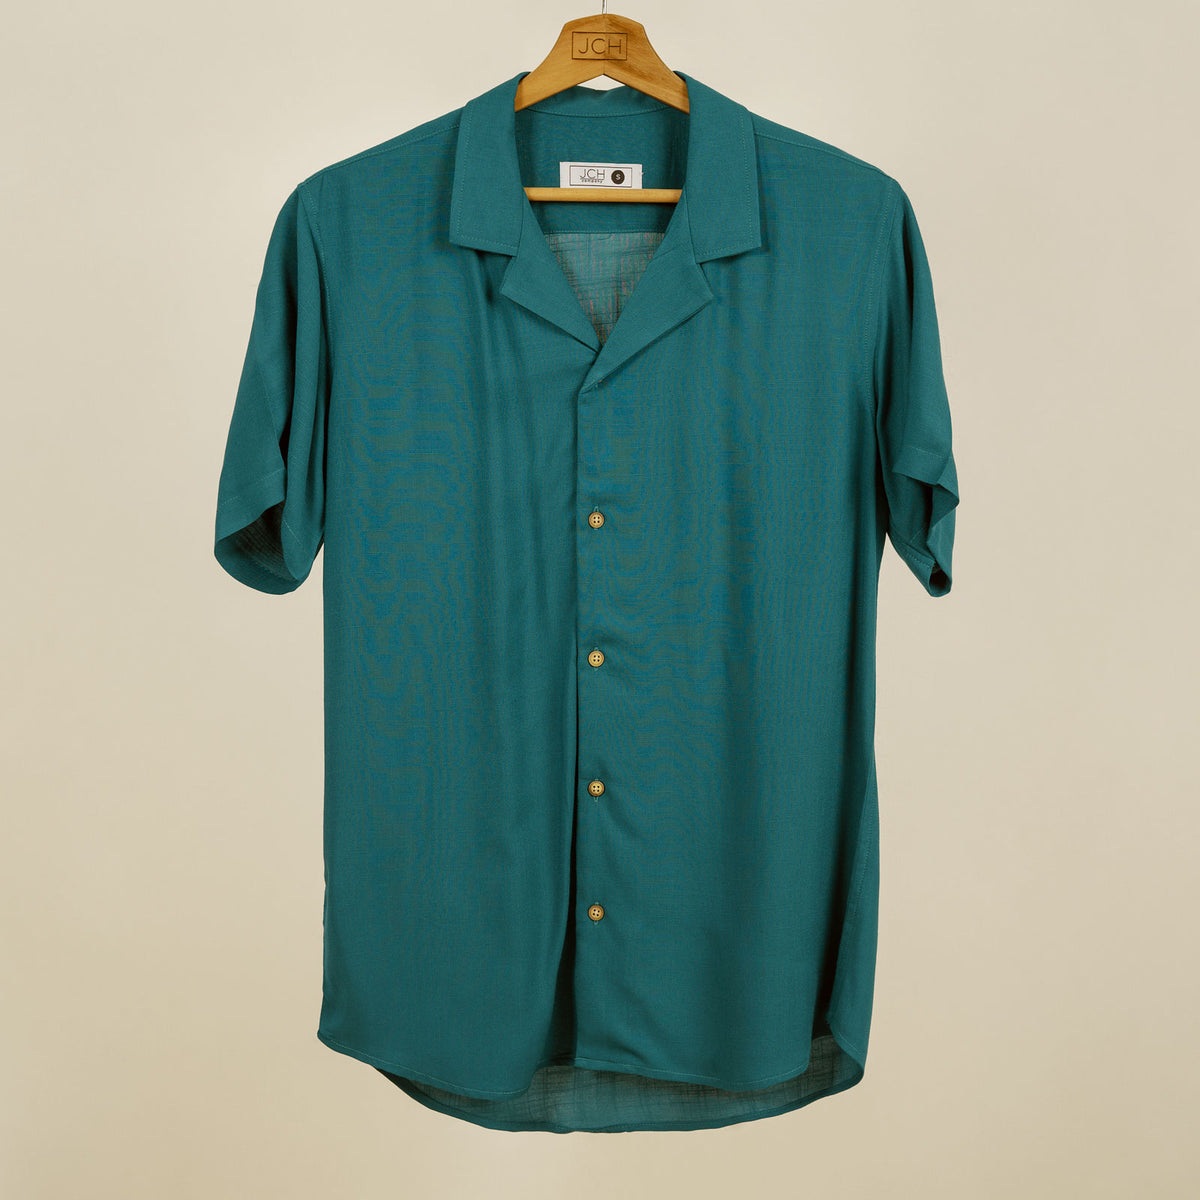 Camisa Bowling Azul Petroleo A35